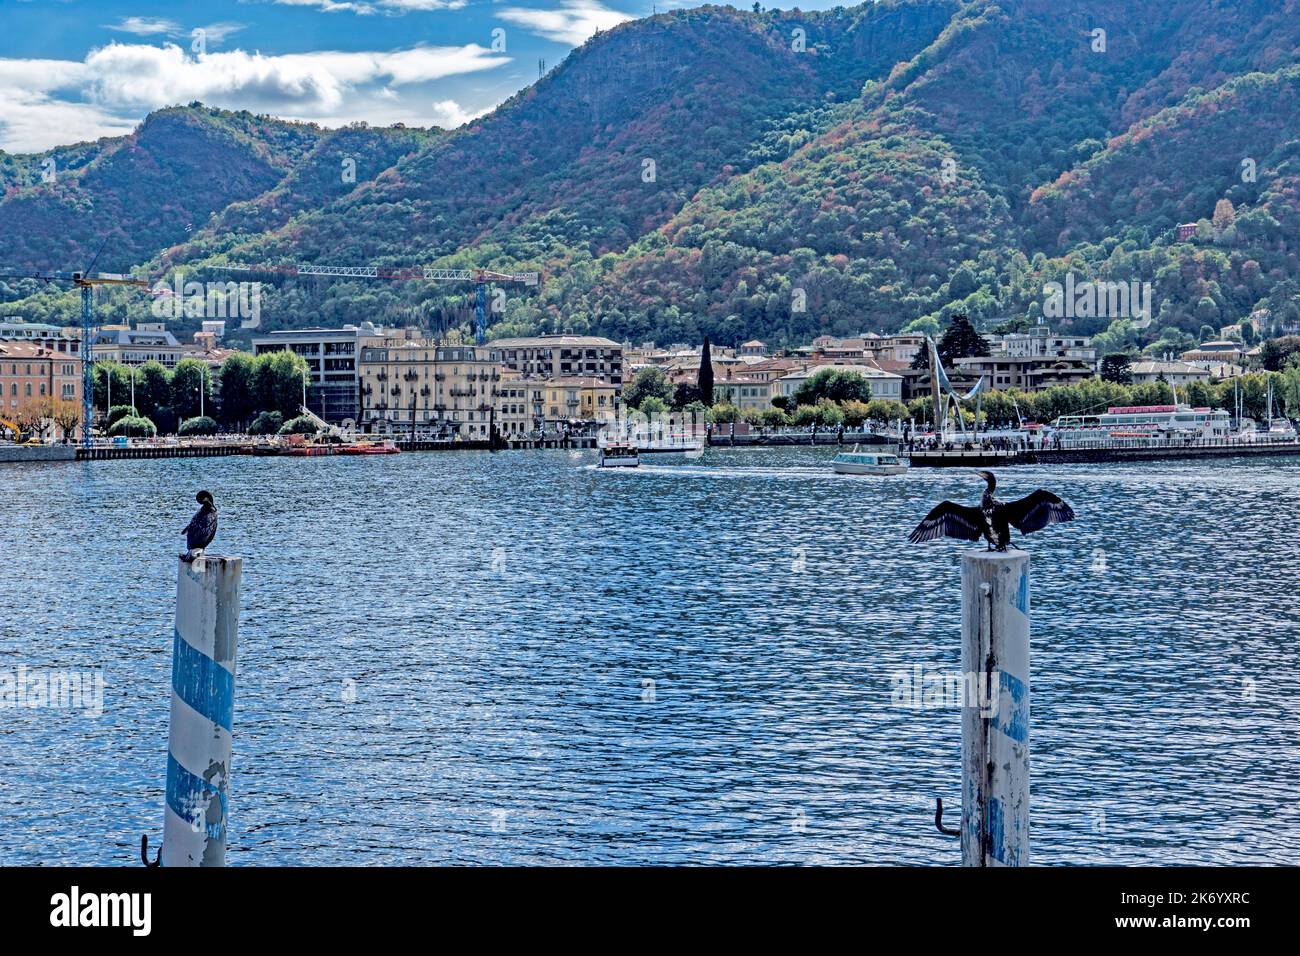 Deux oiseaux cormorans assis sur des pôles opposés, dans la ville de Côme, sur le lac de Côme, en Italie. Pôles séparés. Banque D'Images